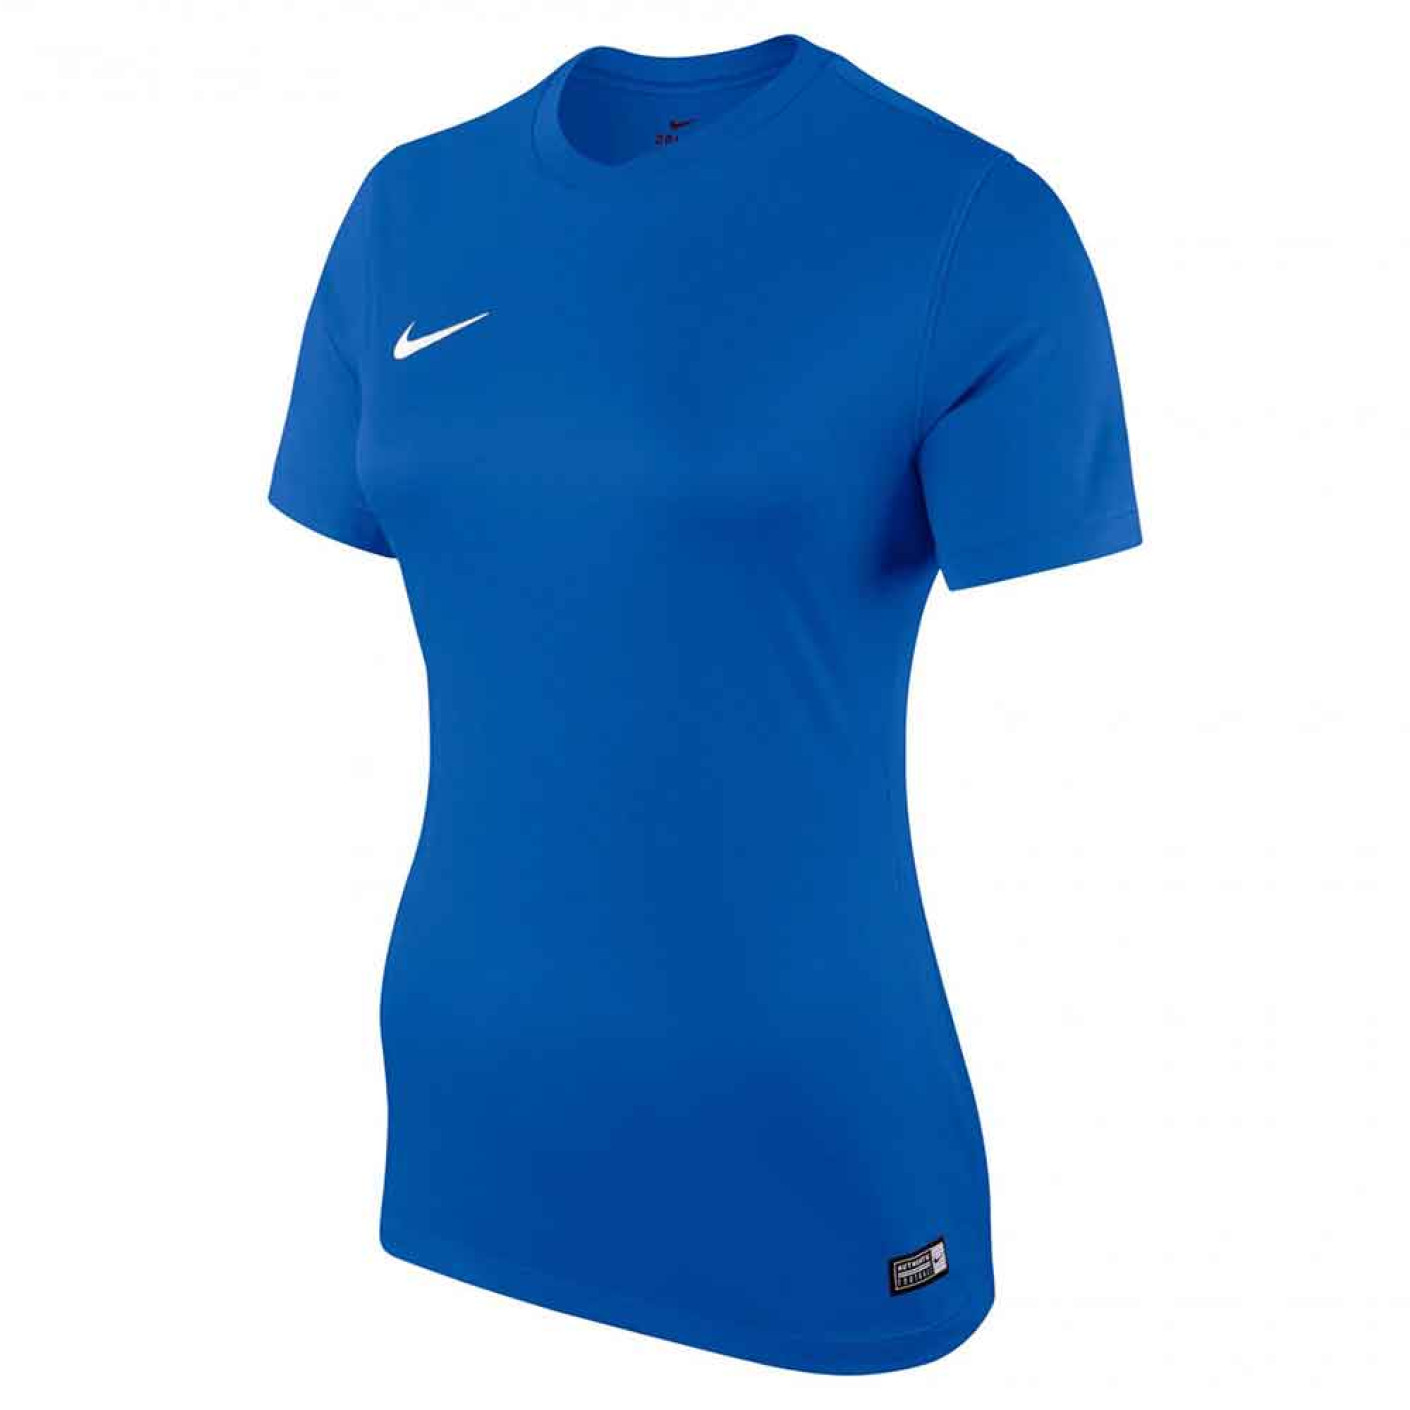 Nike Dry Park VI Shirt Royal Blue White